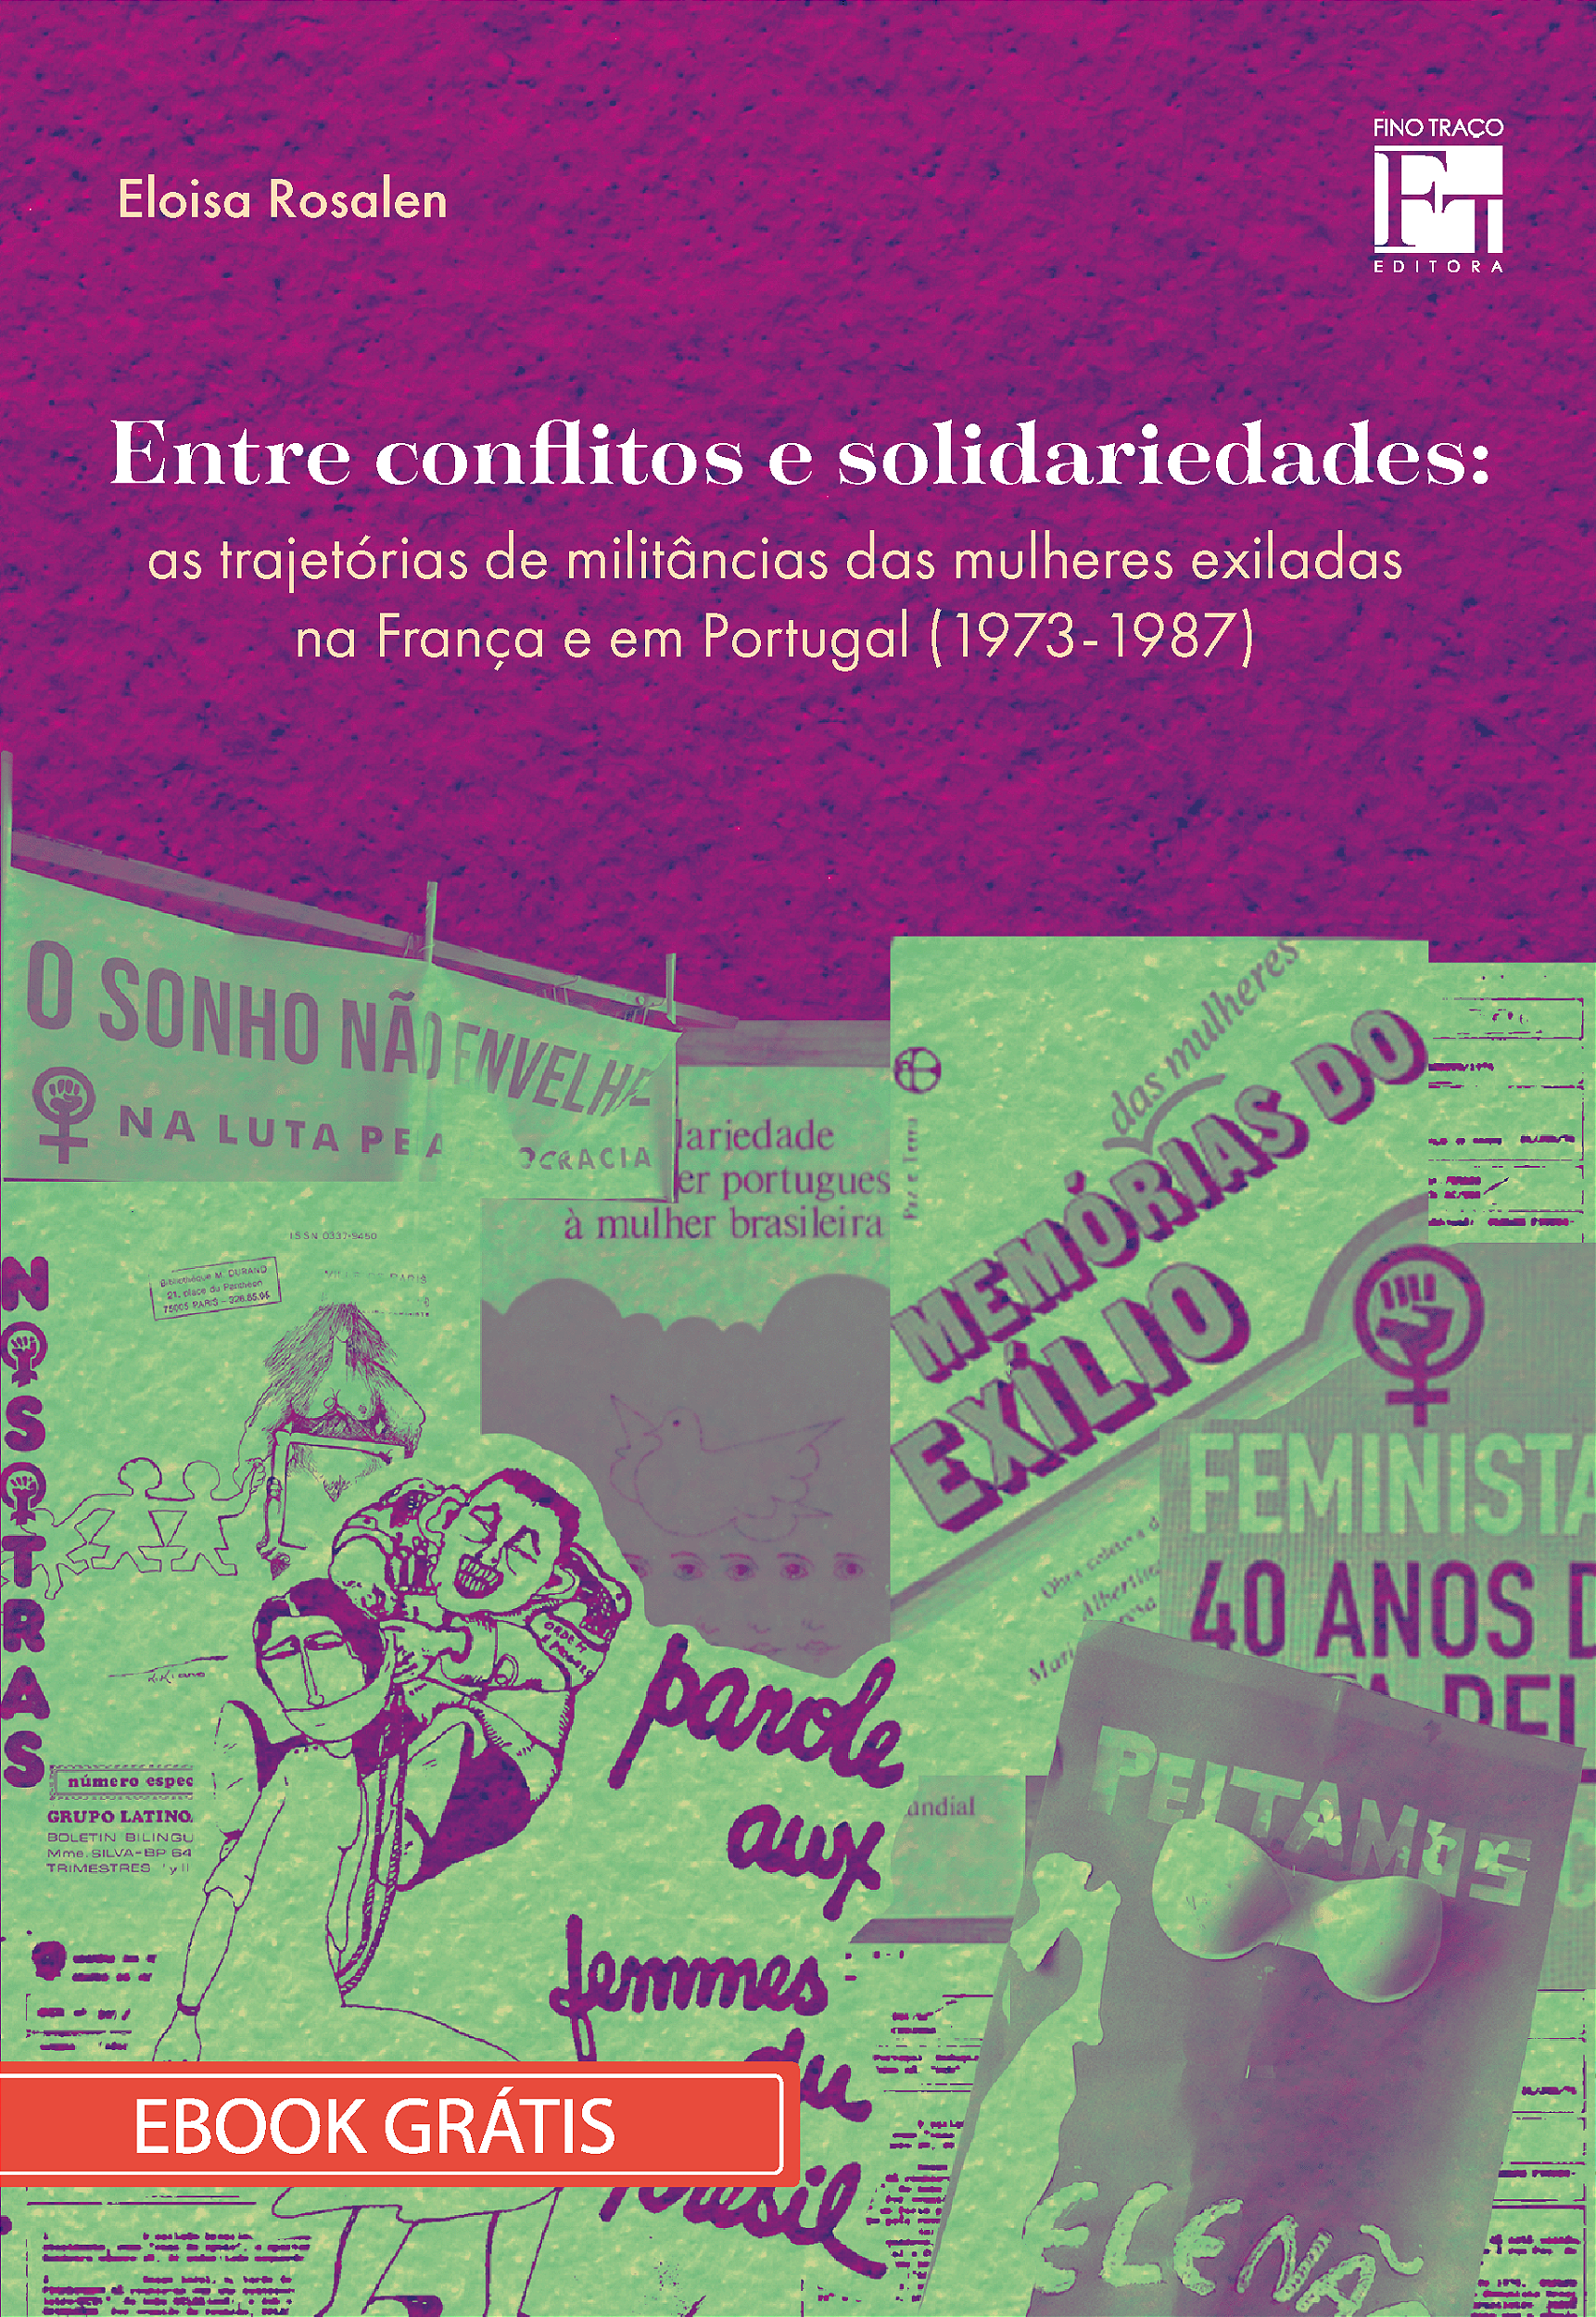 E-book "Entre conflitos e solidariedades: as trajetórias de militância das  mulheres exiladas na França e em Portugal (1973-1987)" - Fino Traço Editora